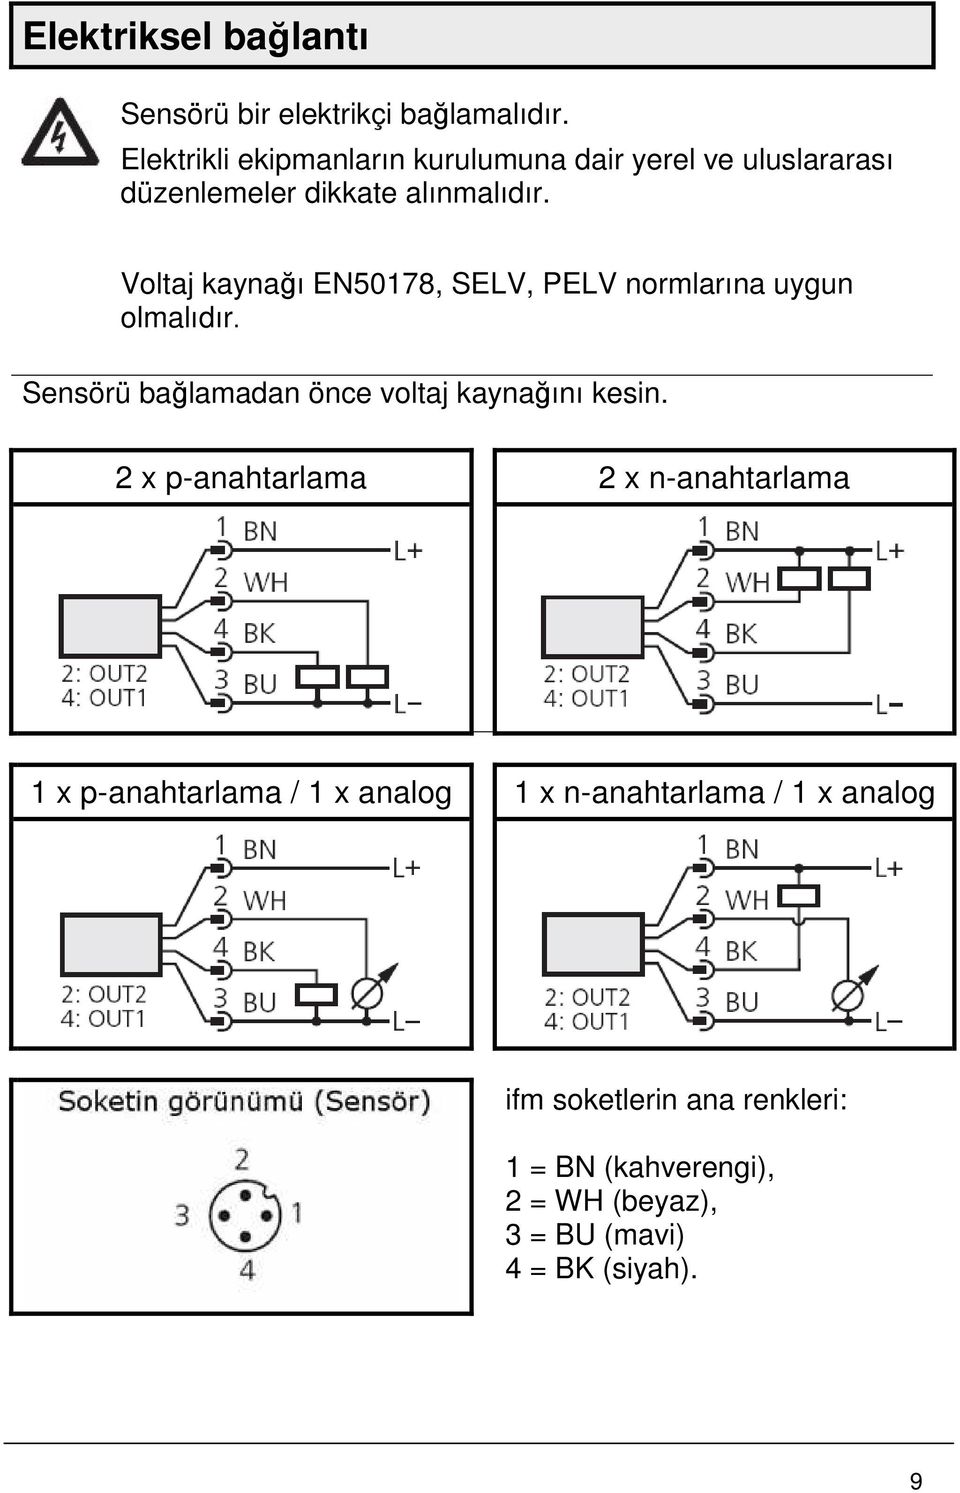 Voltaj kaynağı EN50178, SELV, PELV normlarına uygun olmalıdır. Sensörü bağlamadan önce voltaj kaynağını kesin.